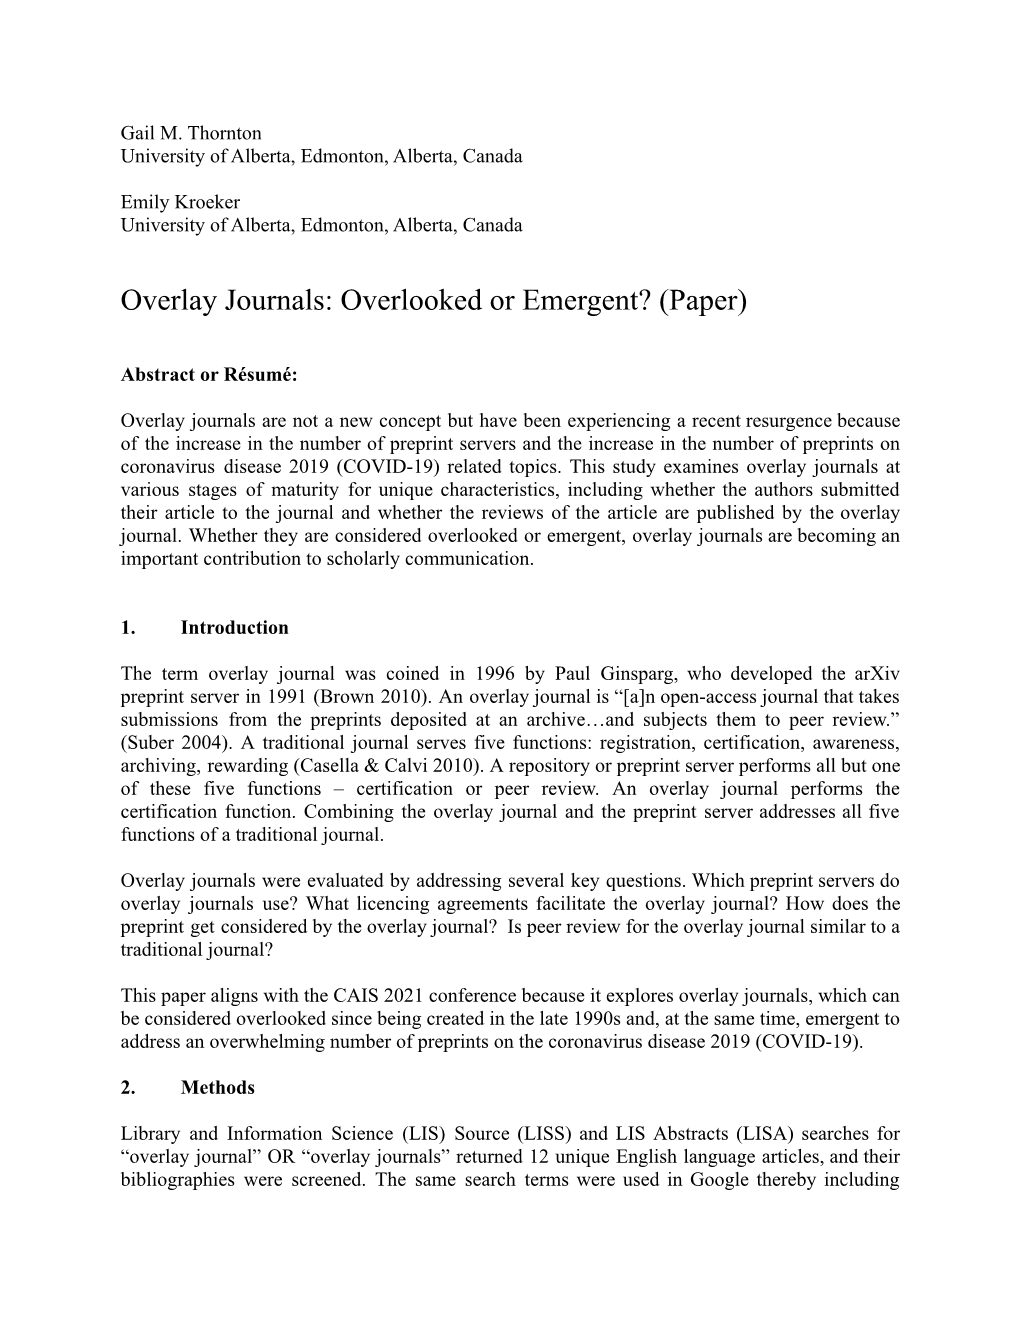 Overlay Journals: Overlooked Or Emergent? (Paper)